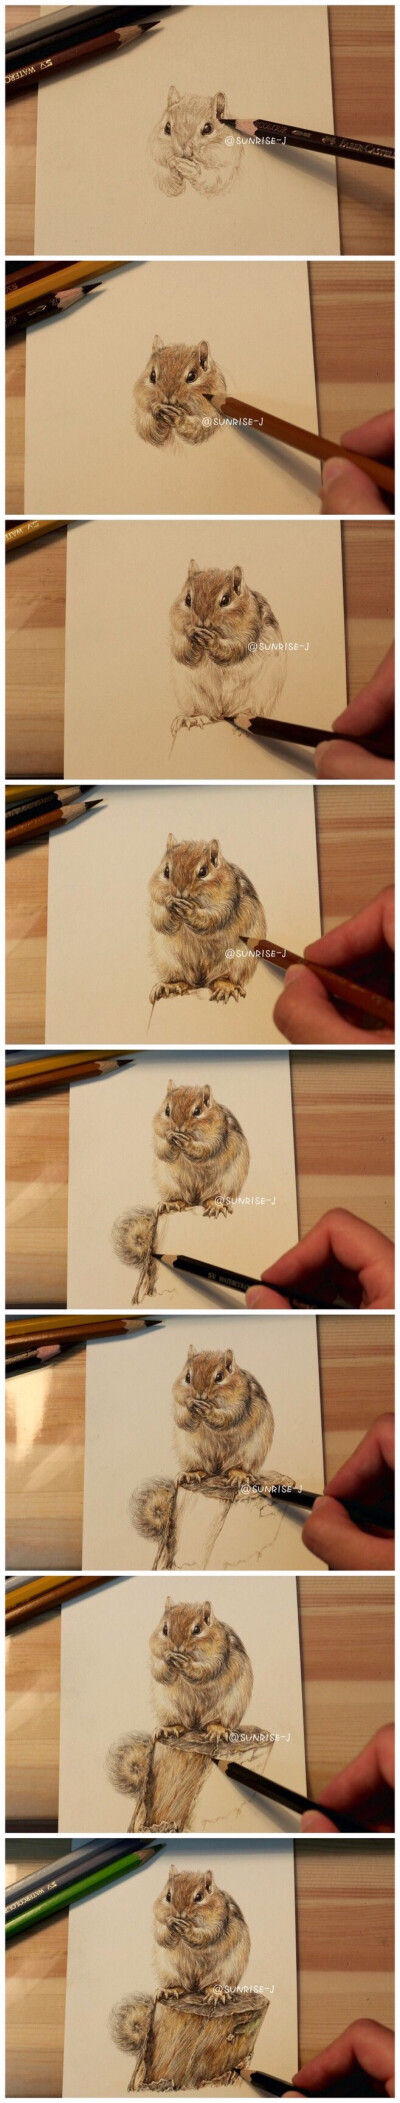 松鼠手绘插画作品教程